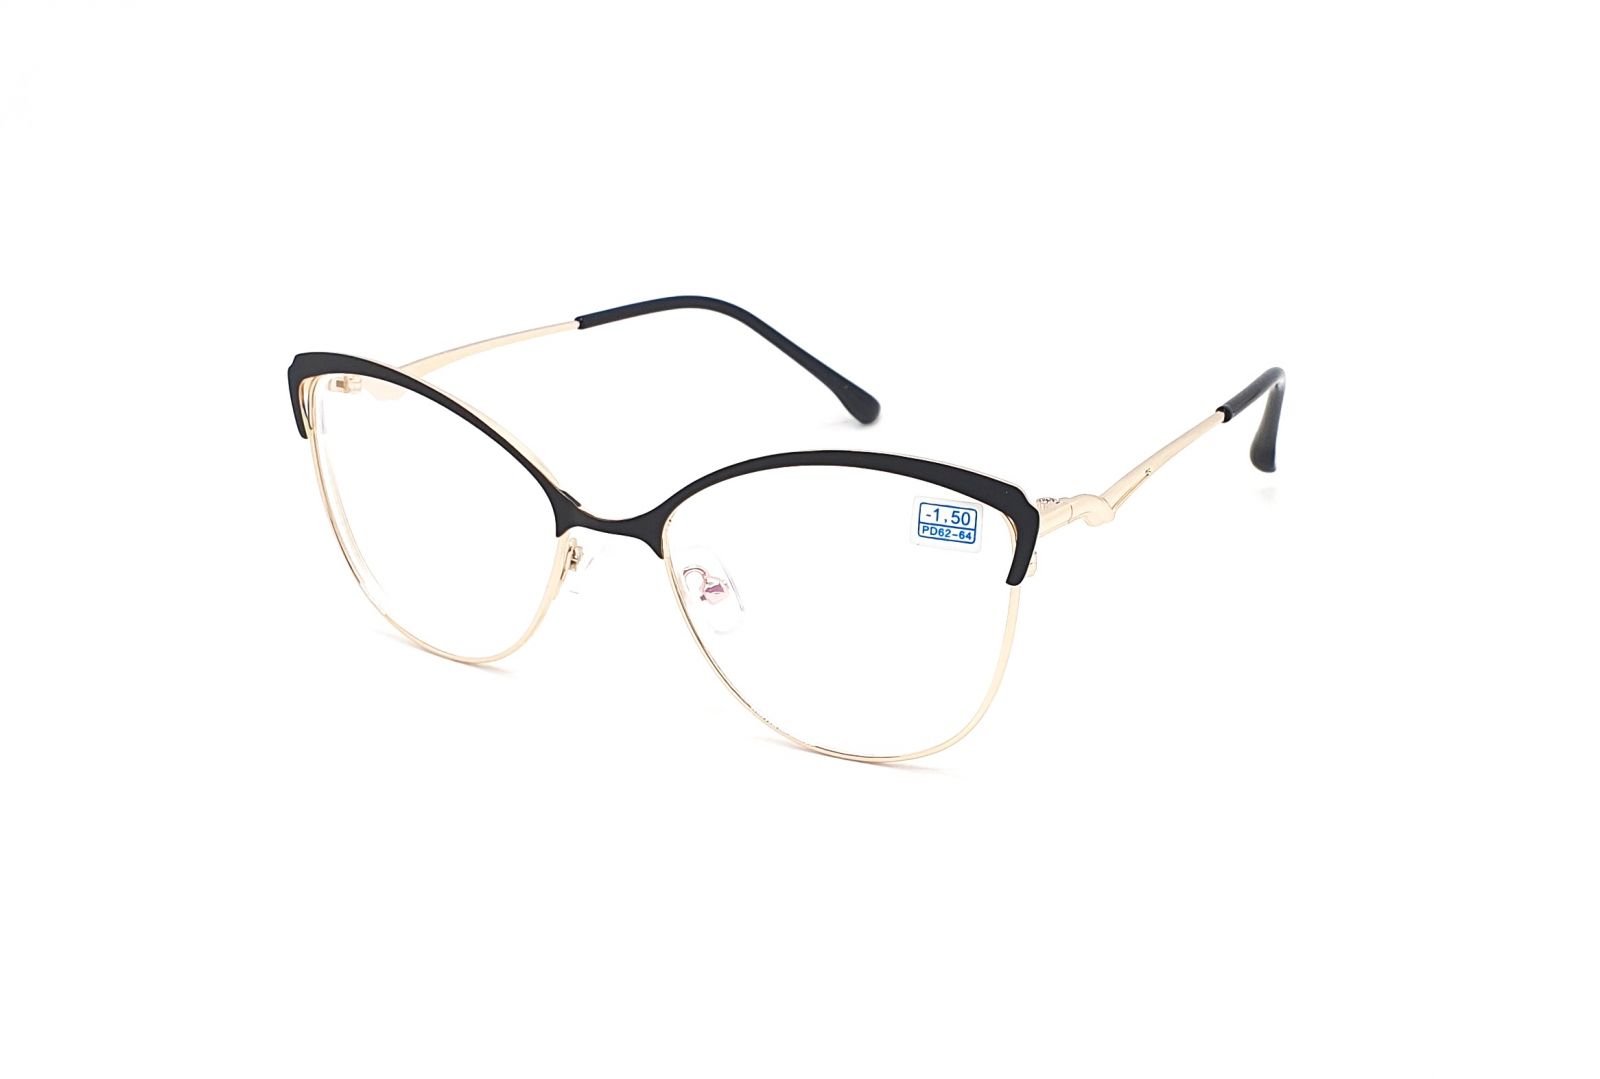 Dioptrické brýle 850 / -2,50 black/gold s antireflexní vrstvou